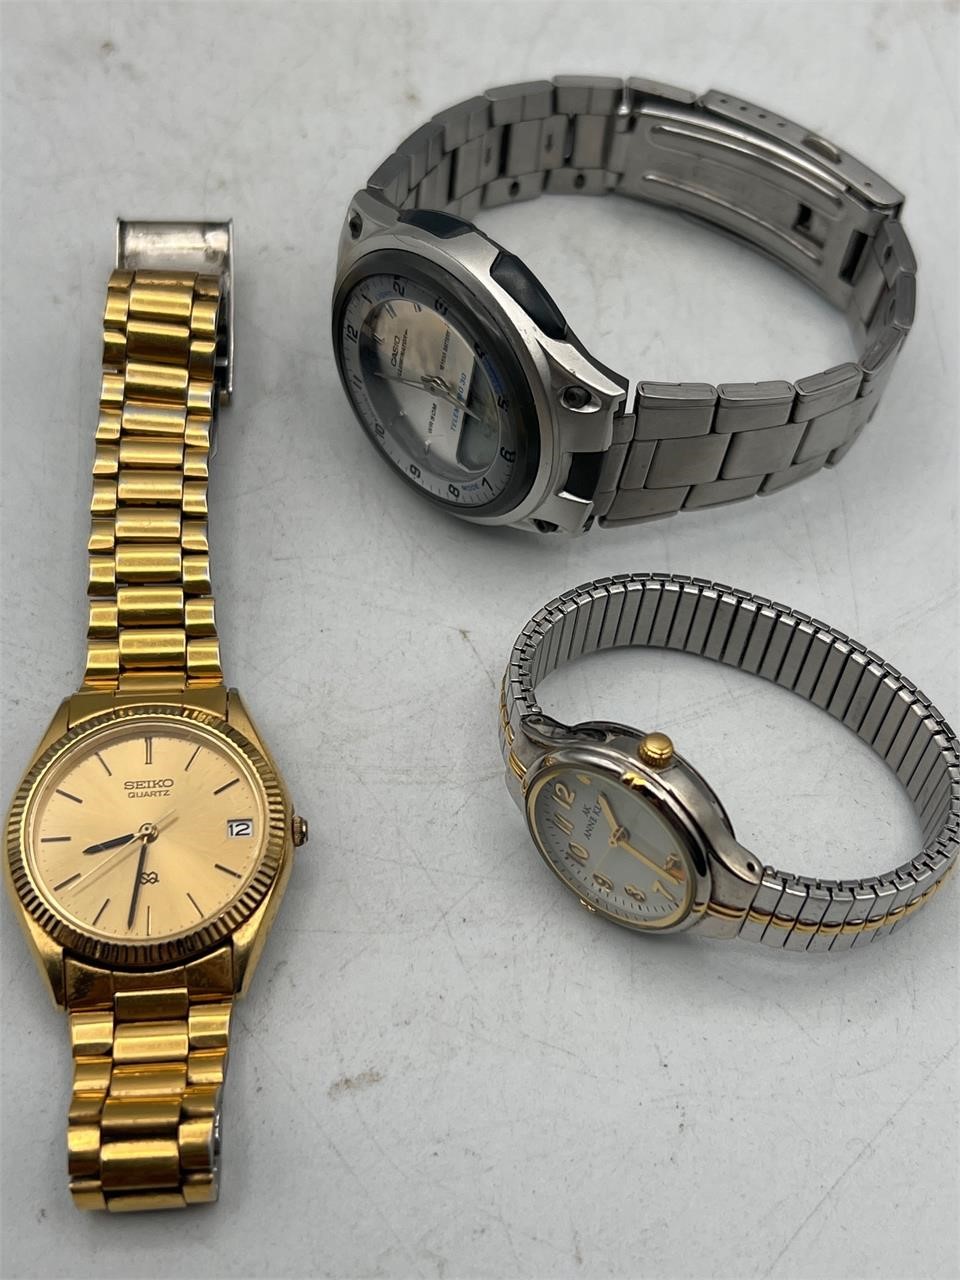 Seiko quartz watch and more